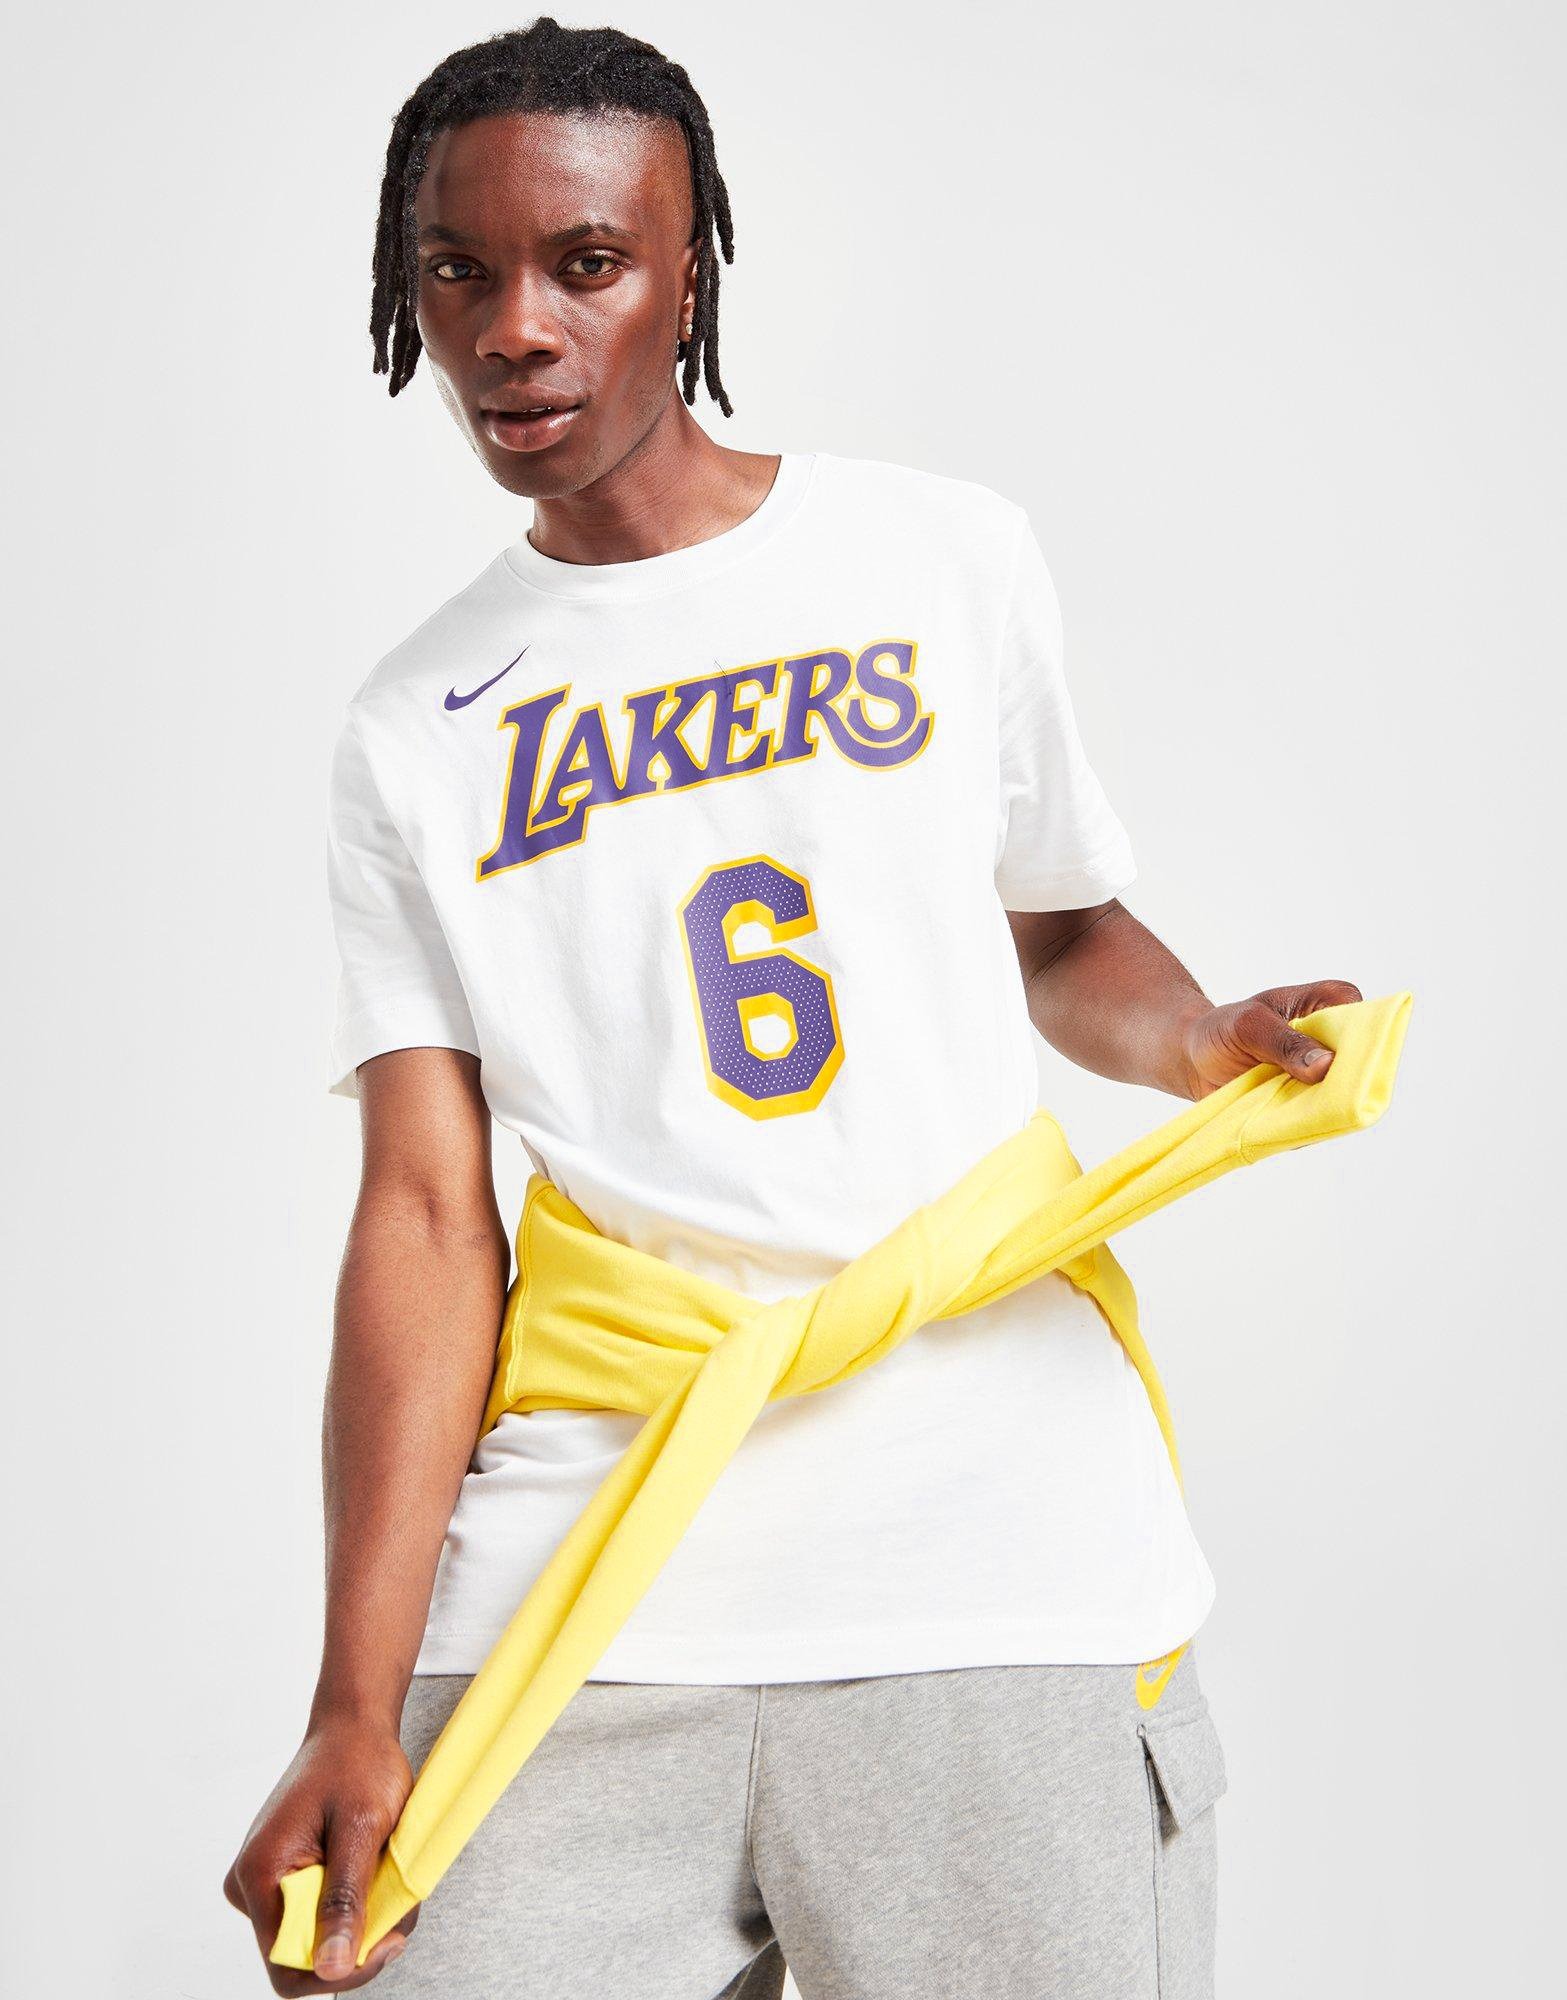 Lakers Air Jordan 13 Hat and Shirt Outfit